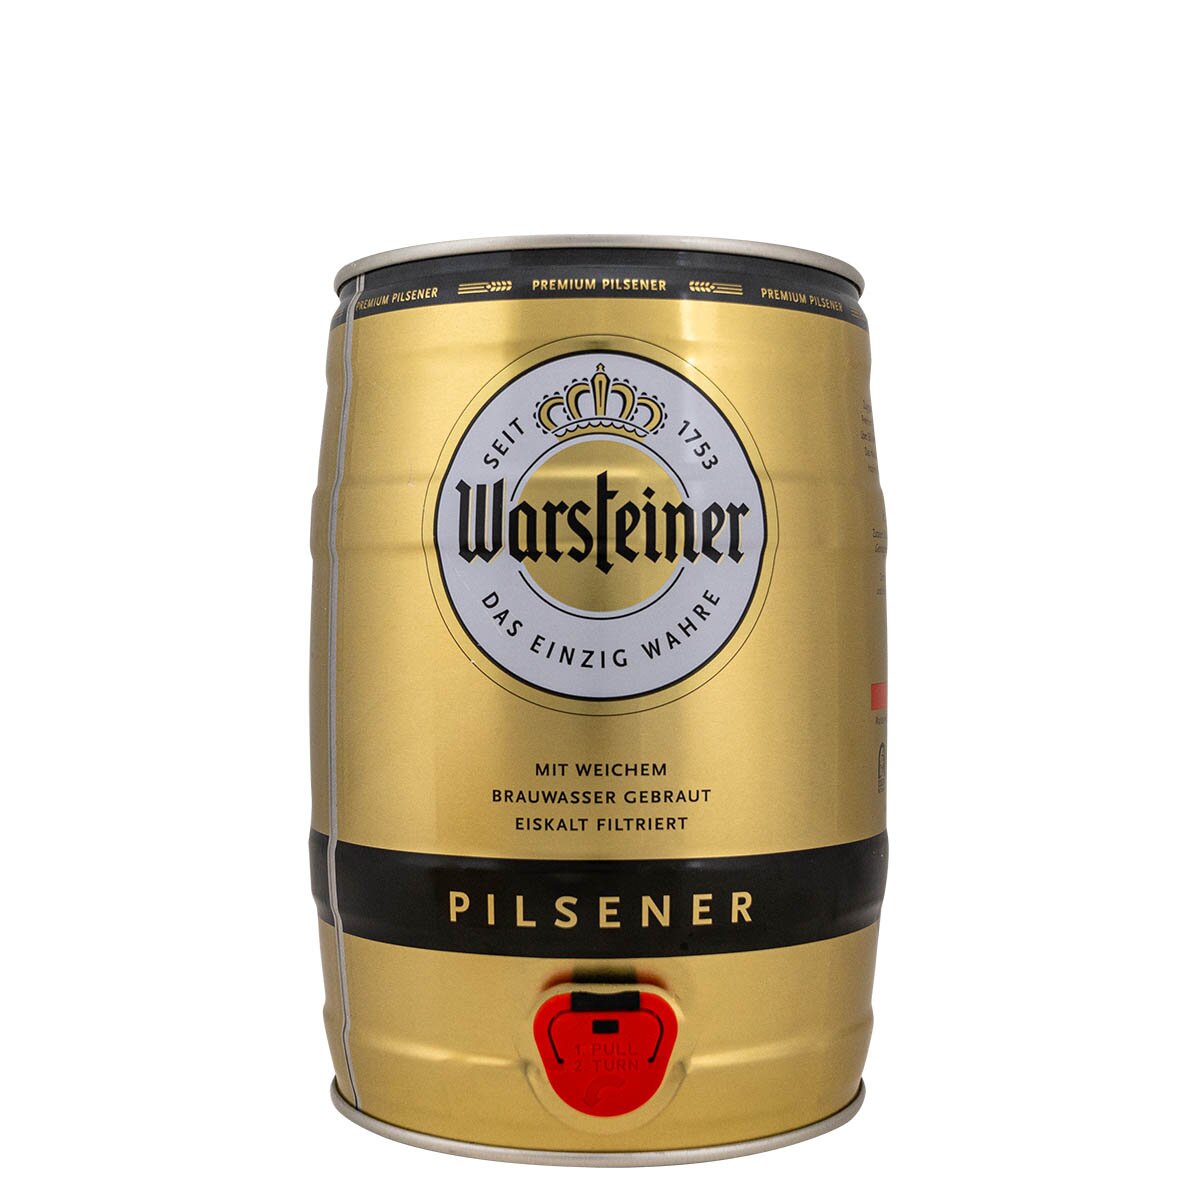 5 ✓ Bieren den Liter Der Warsteiner unter Fass ✓ Klassiker